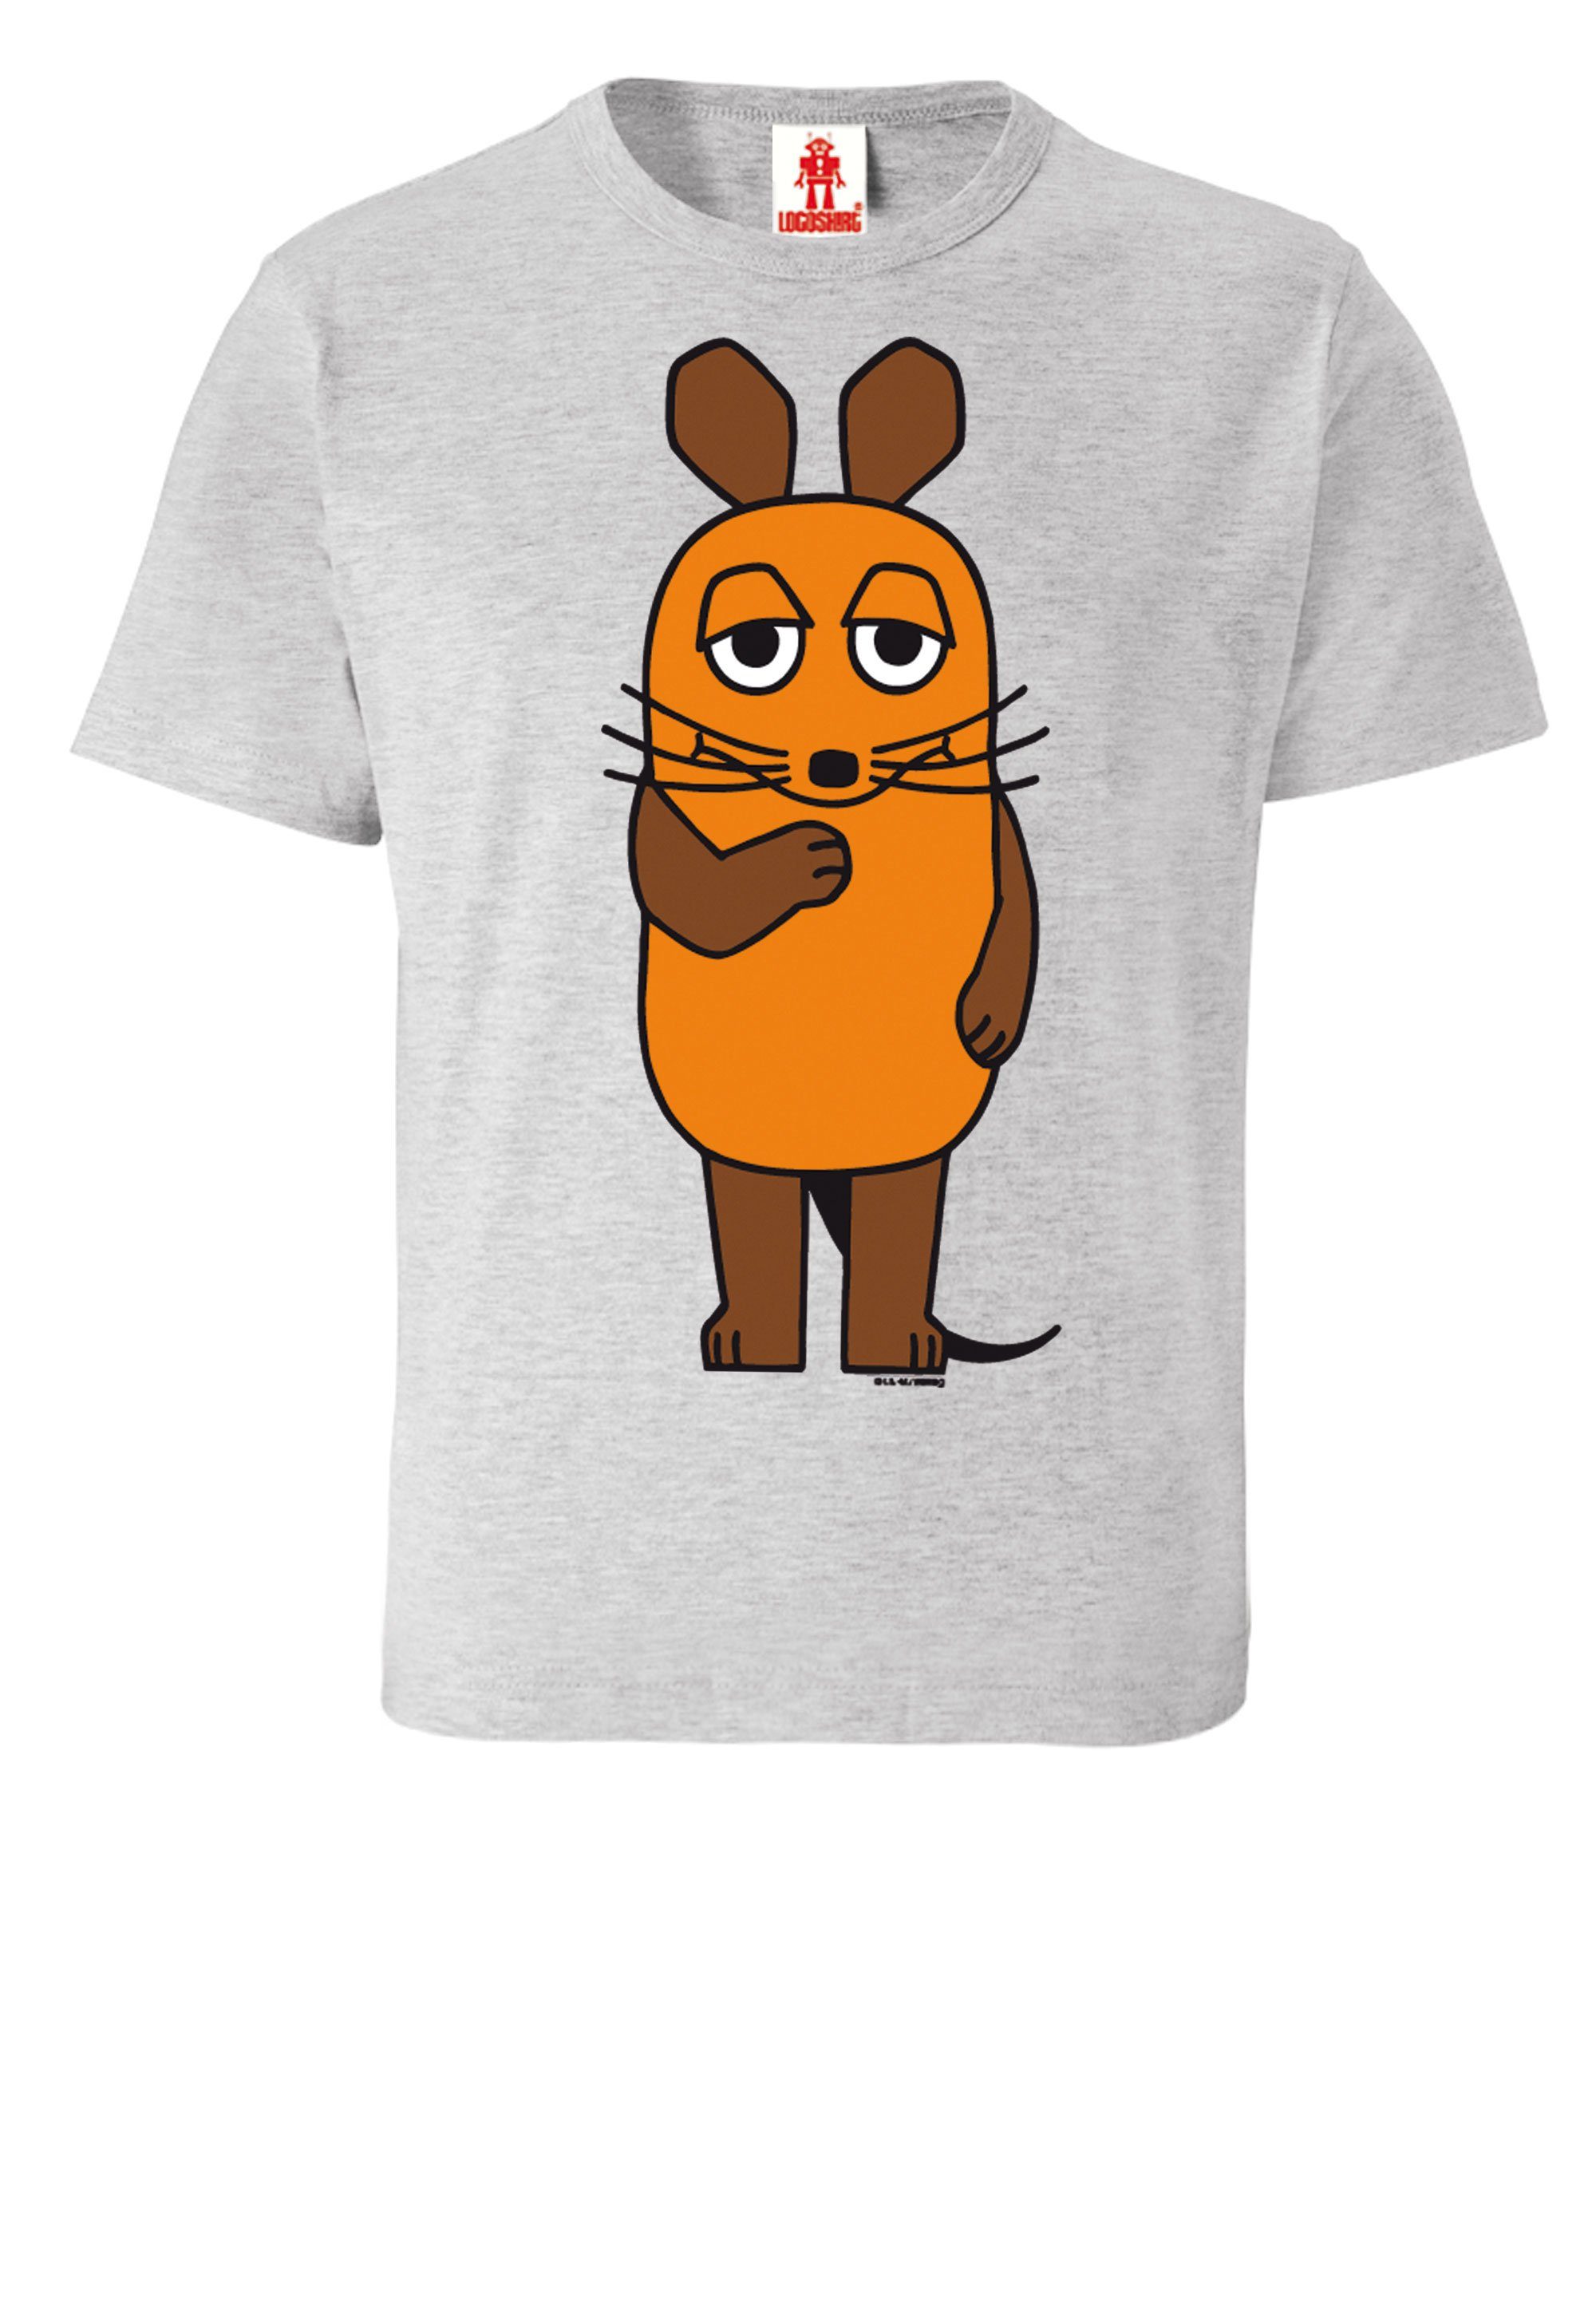 LOGOSHIRT T-Shirt Sendung mit der coolem - Maus Print mit grau-meliert Maus